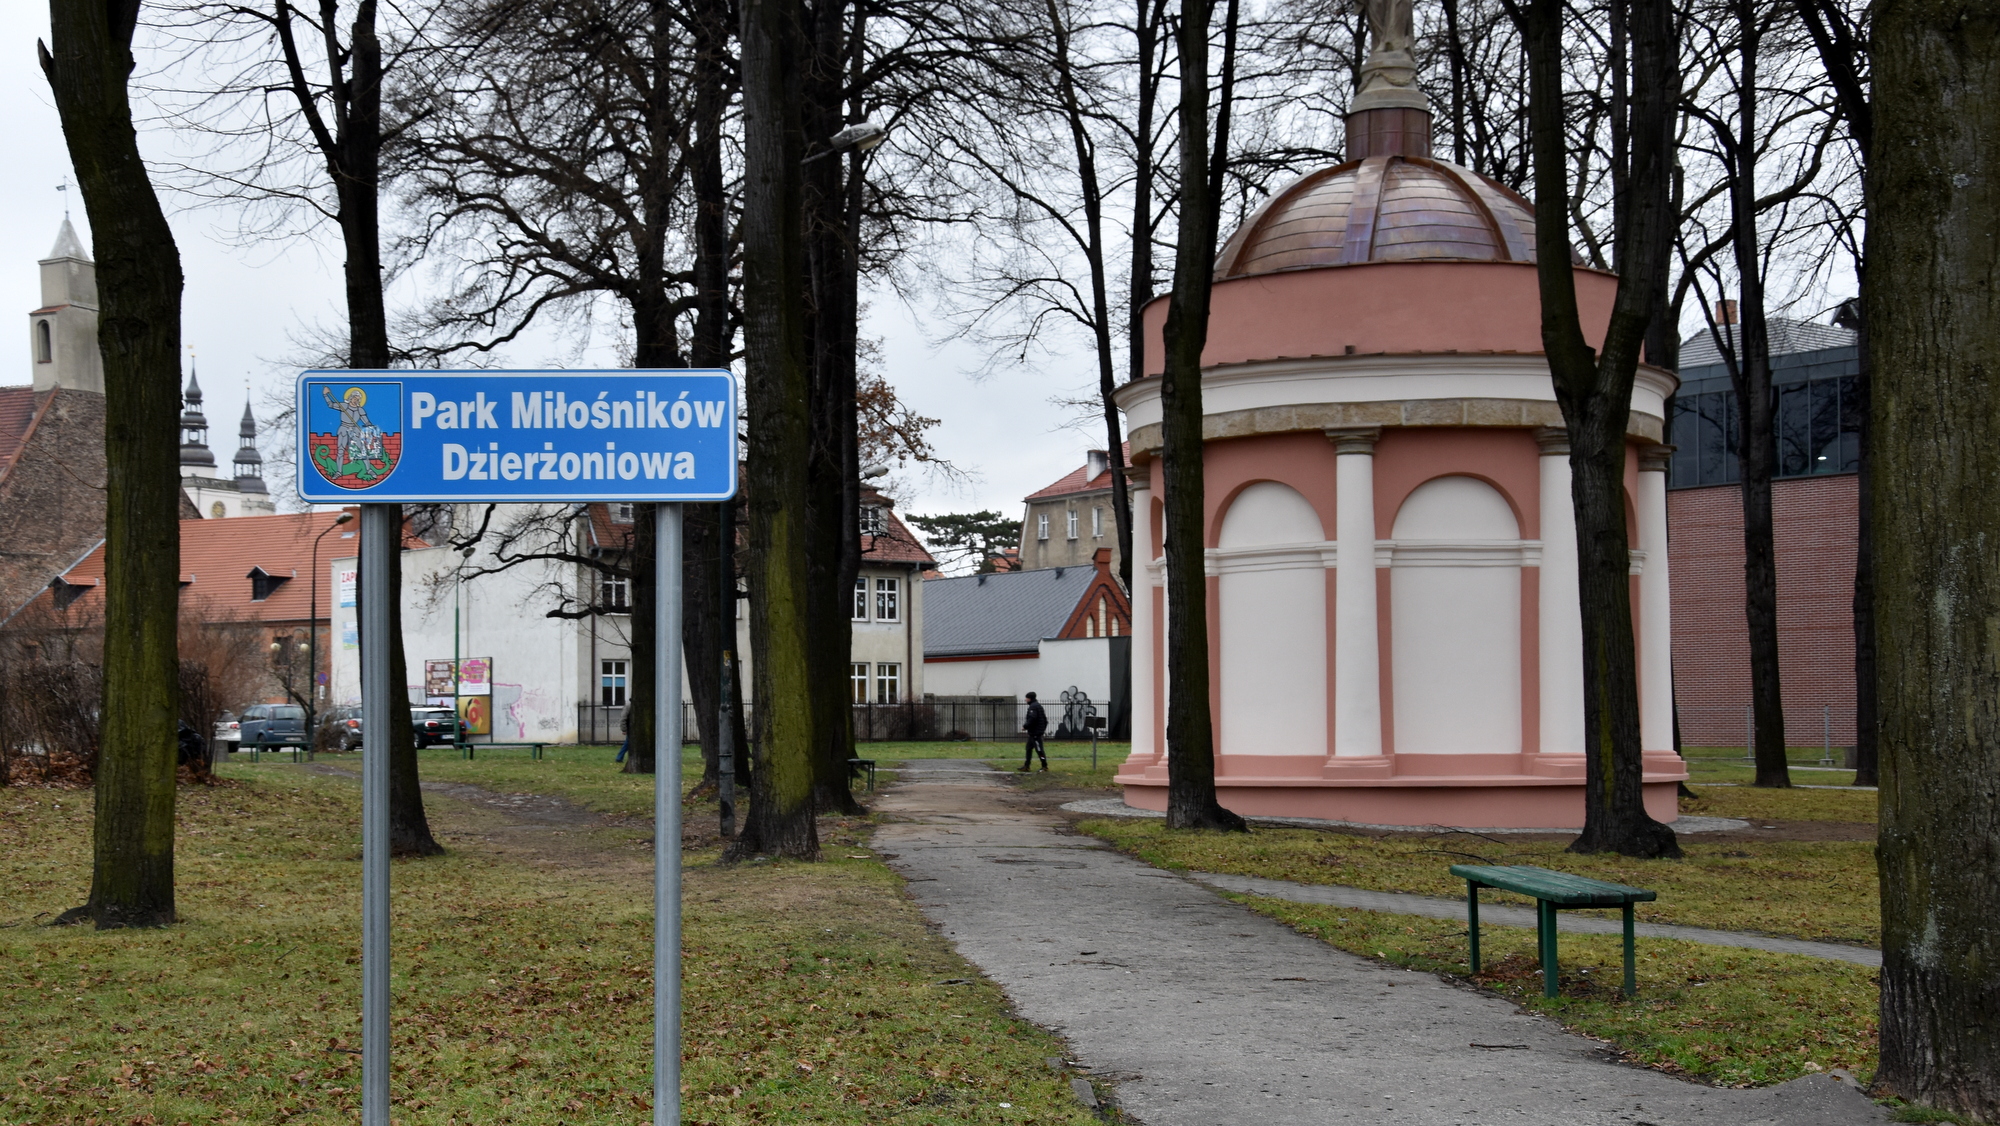 Park, po lewej tabica z nazwą Park Miłośników Dzirżowniowa, w drugim planie okrągła kaplica